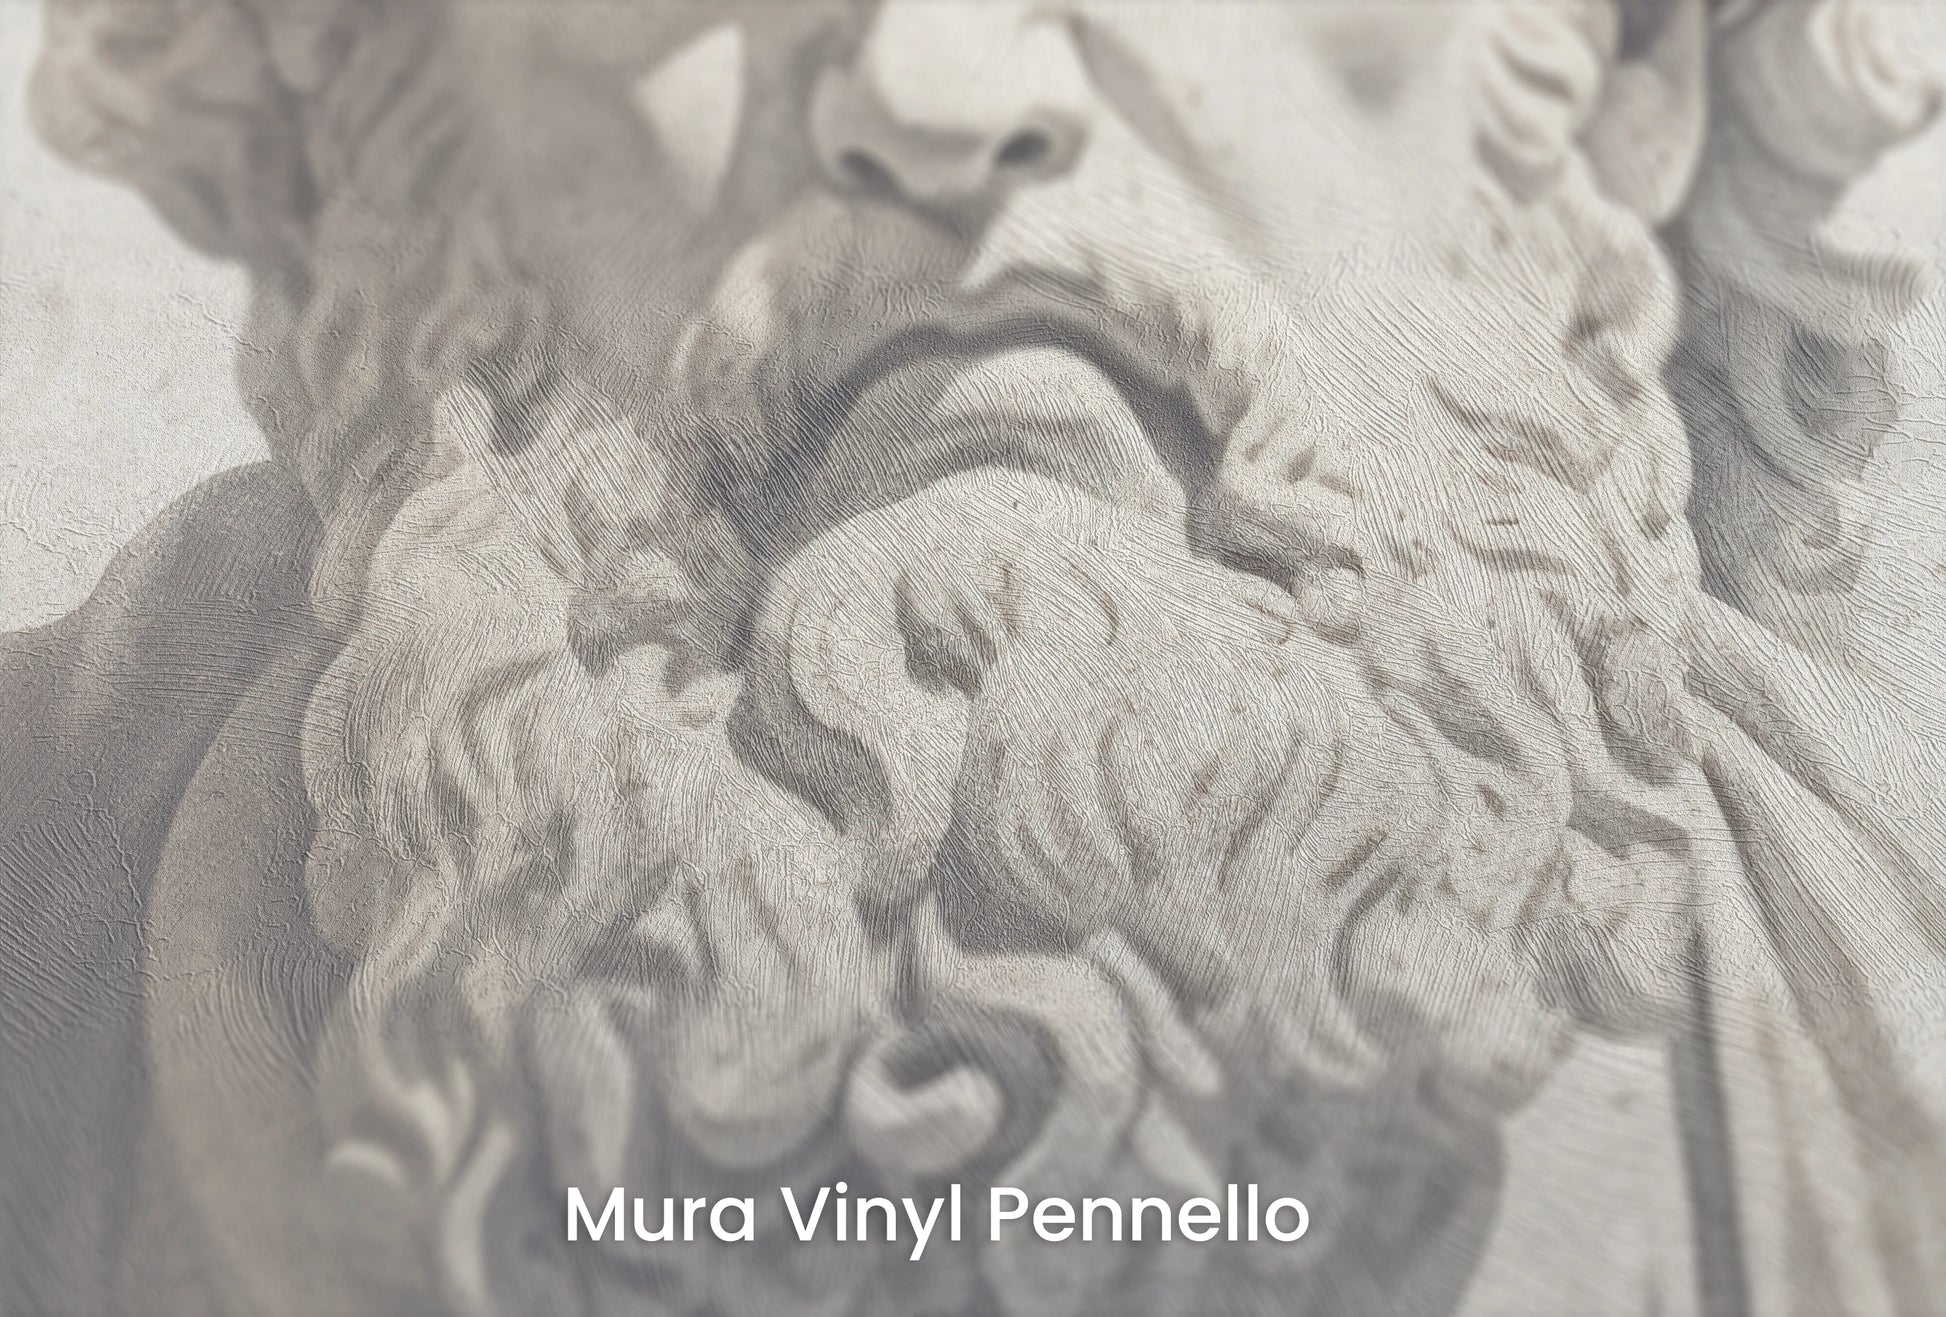 Zbliżenie na artystyczną fototapetę o nazwie Stoic Wisdom na podłożu Mura Vinyl Pennello - faktura pociągnięć pędzla malarskiego.